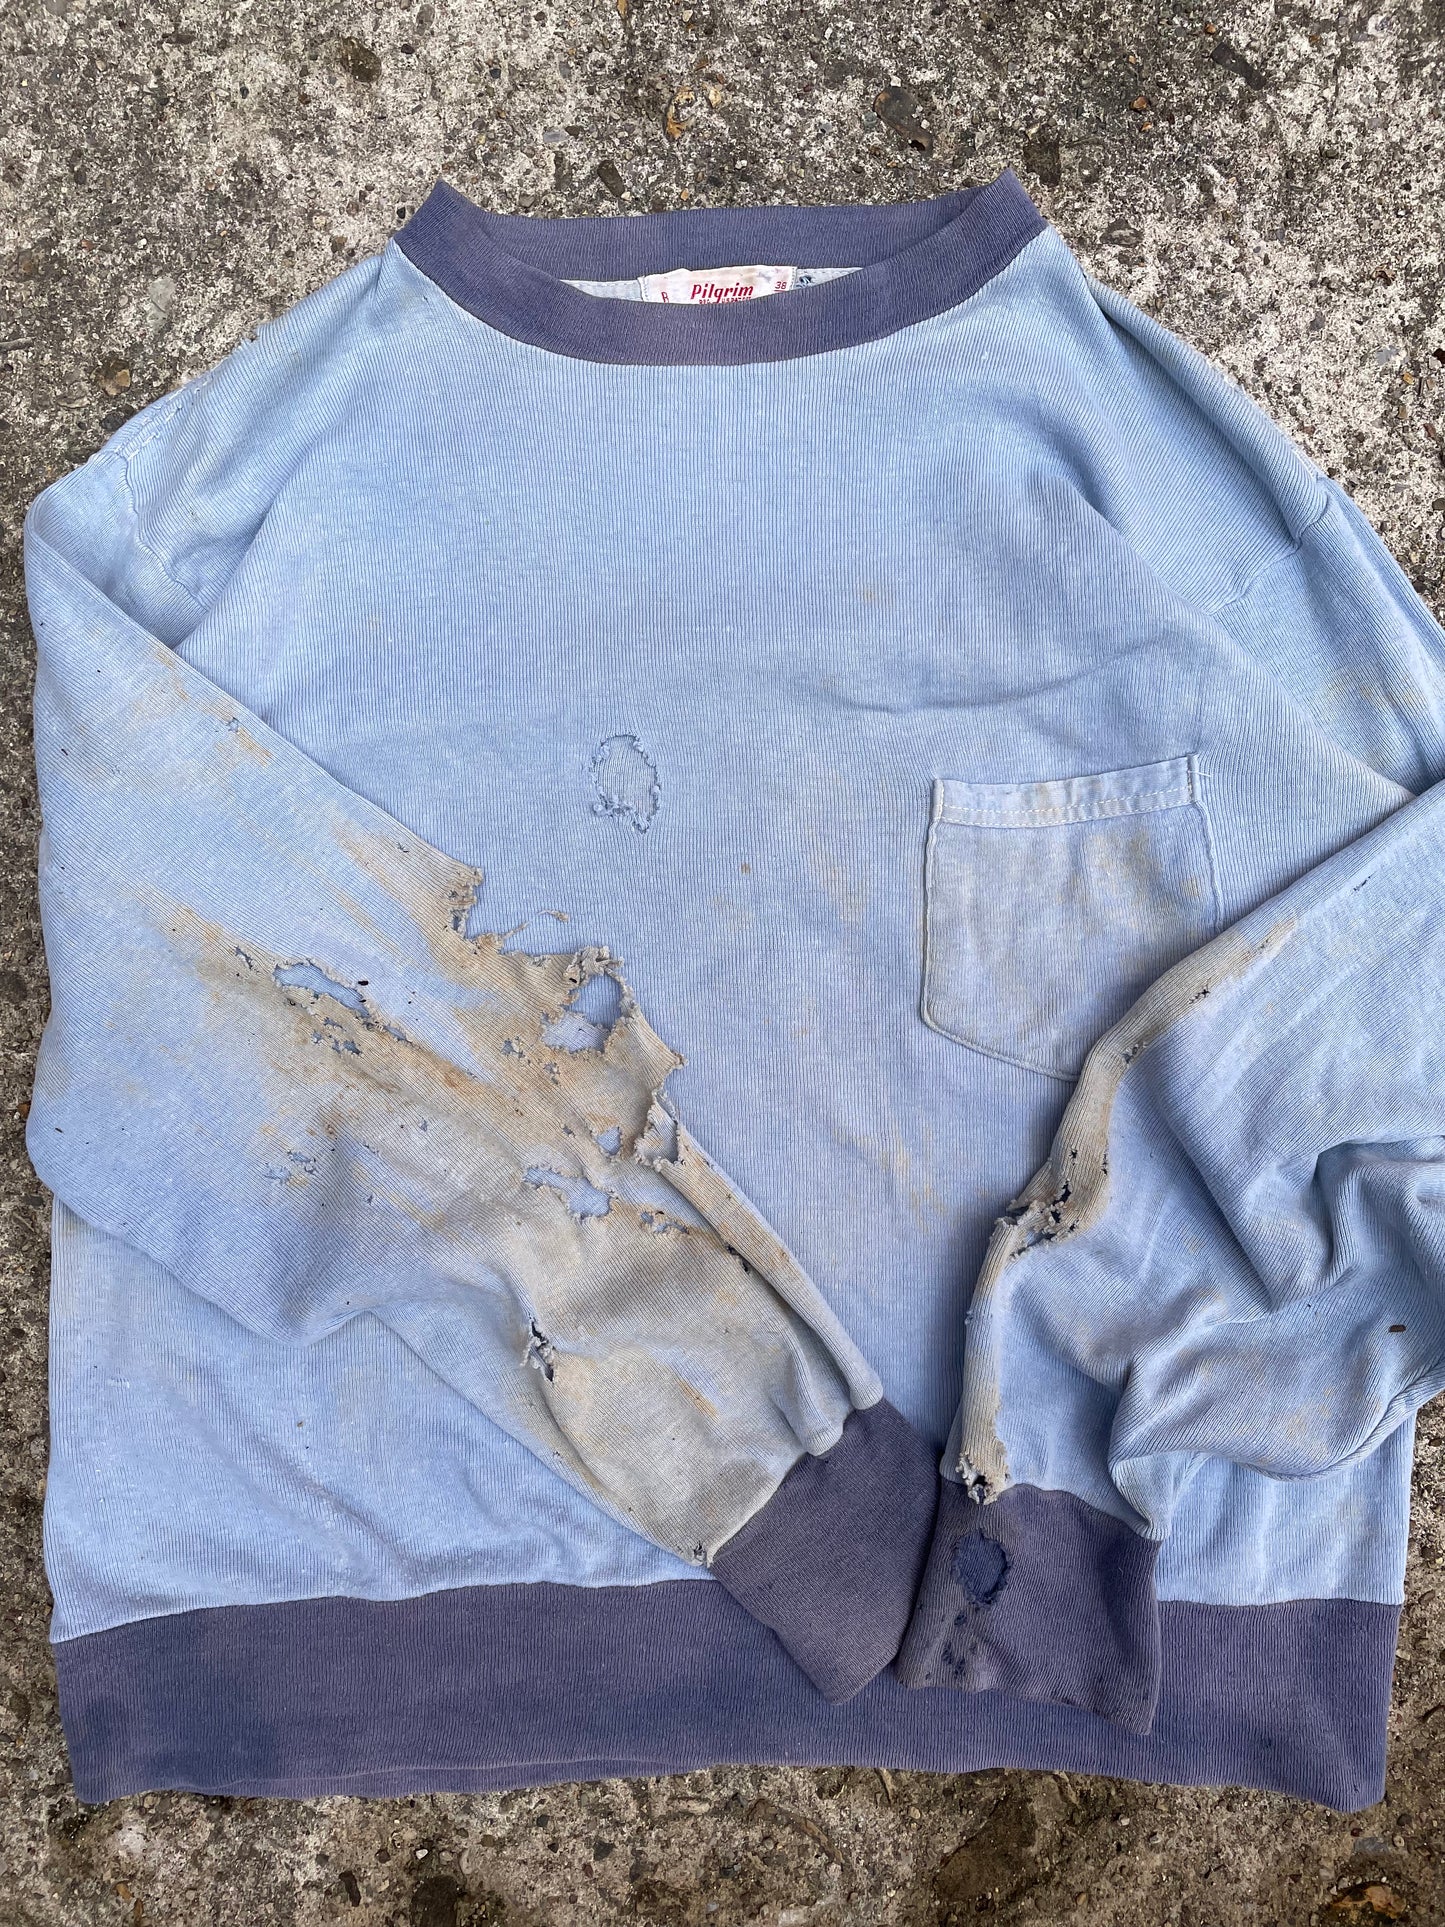 1950's/1960's Pilgrim Thrashed Long Sleeve Shirt - M